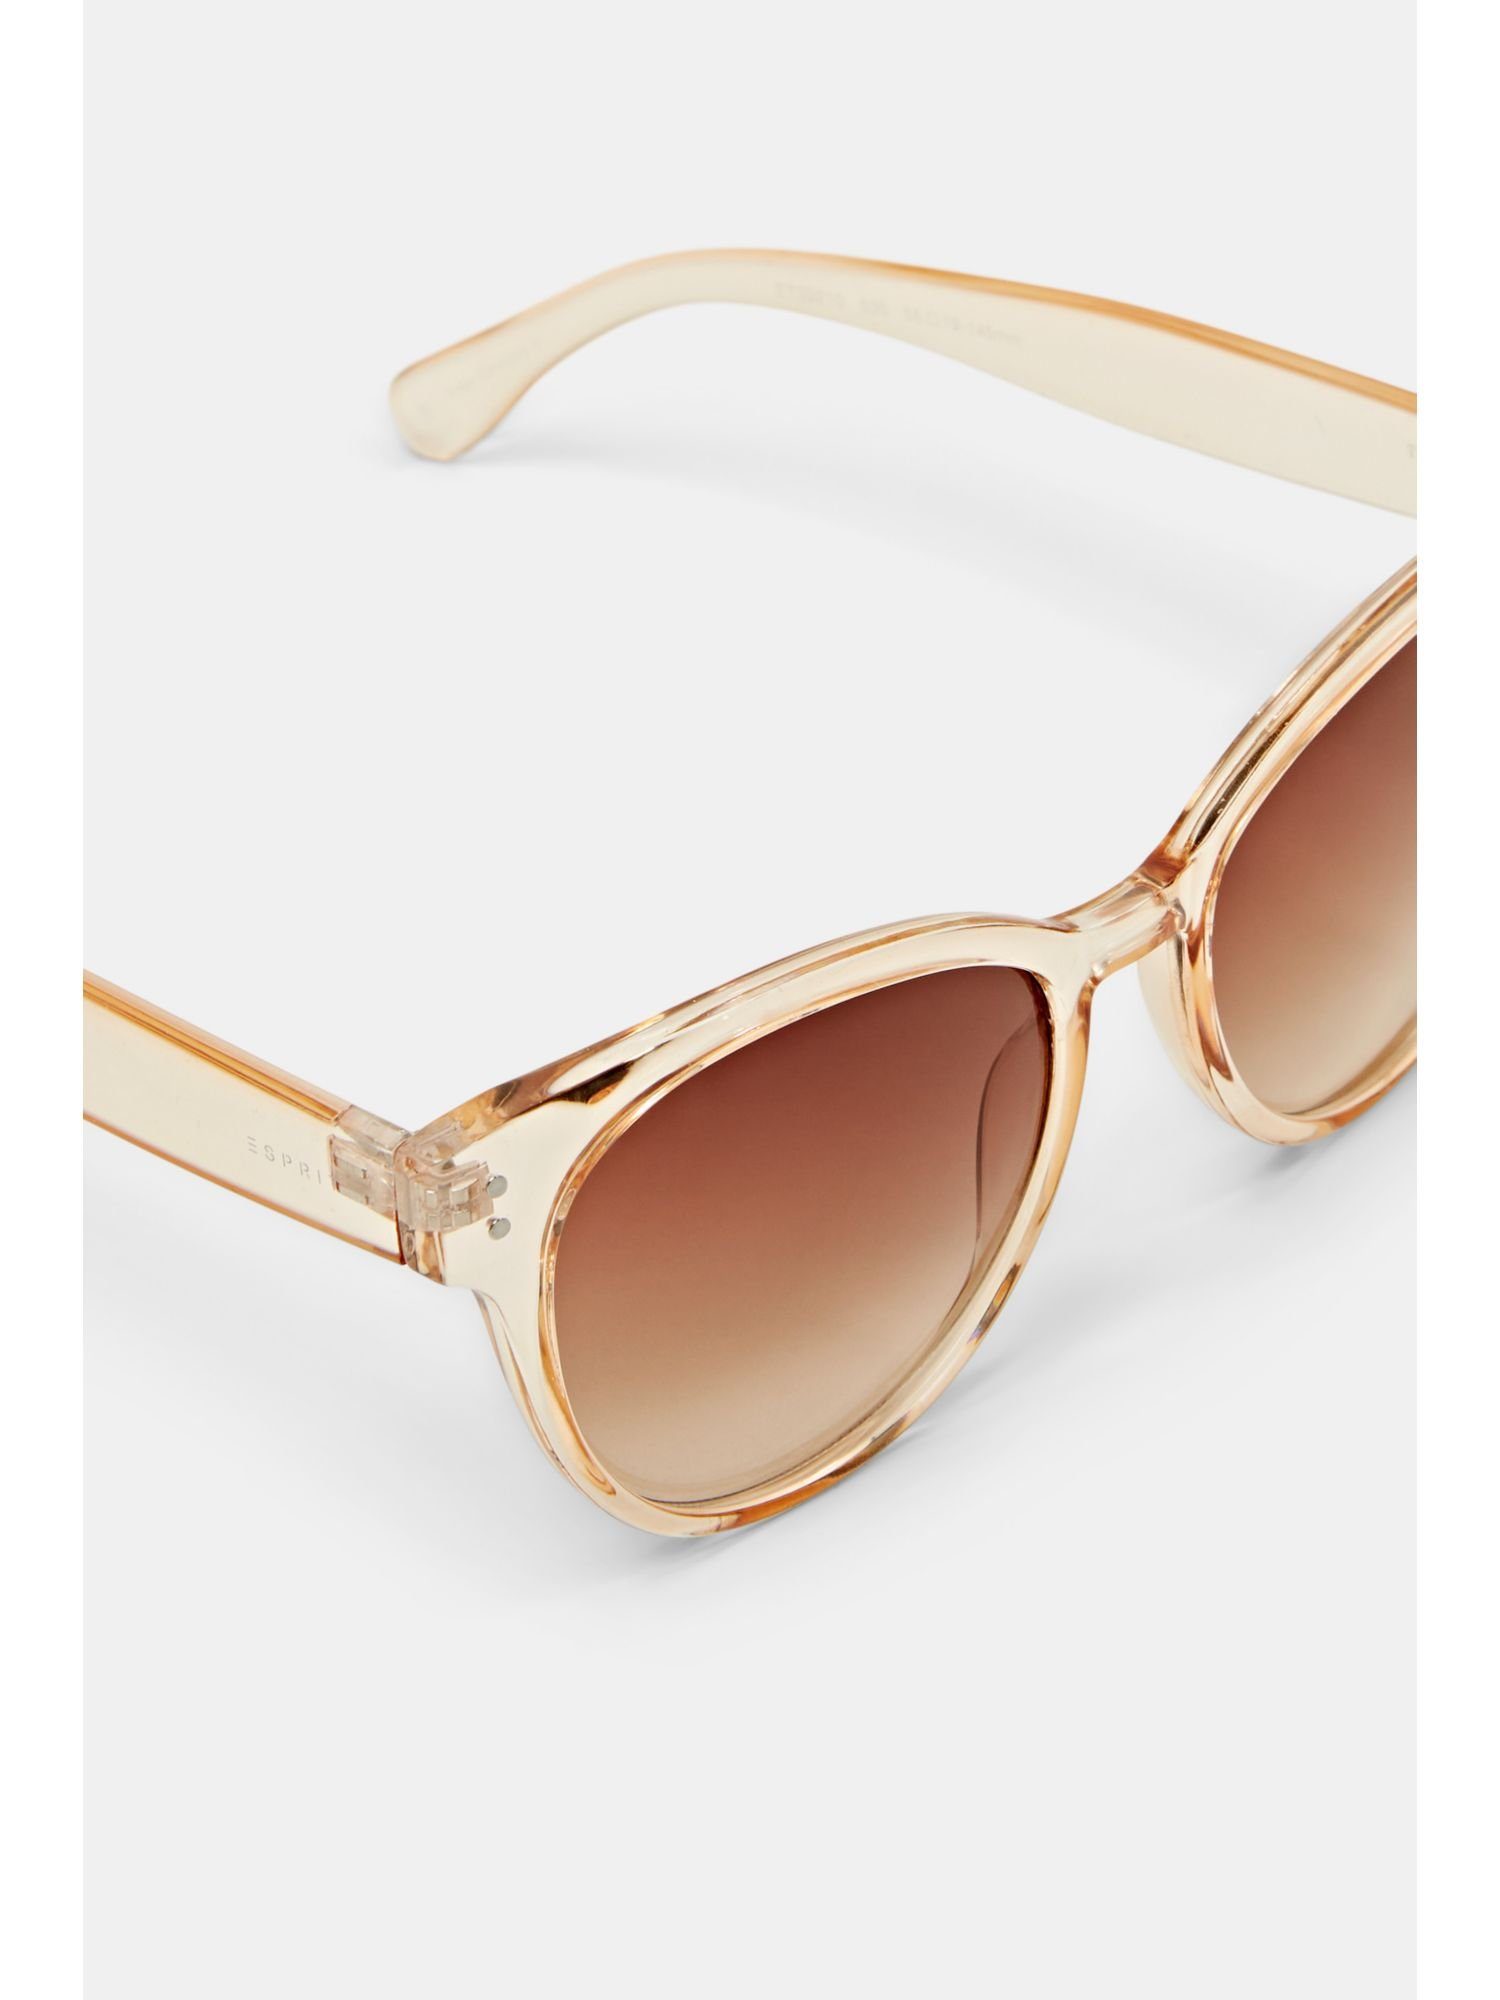 Esprit BROWN Sonnenbrille Fassung mit transparenter Sonnenbrille